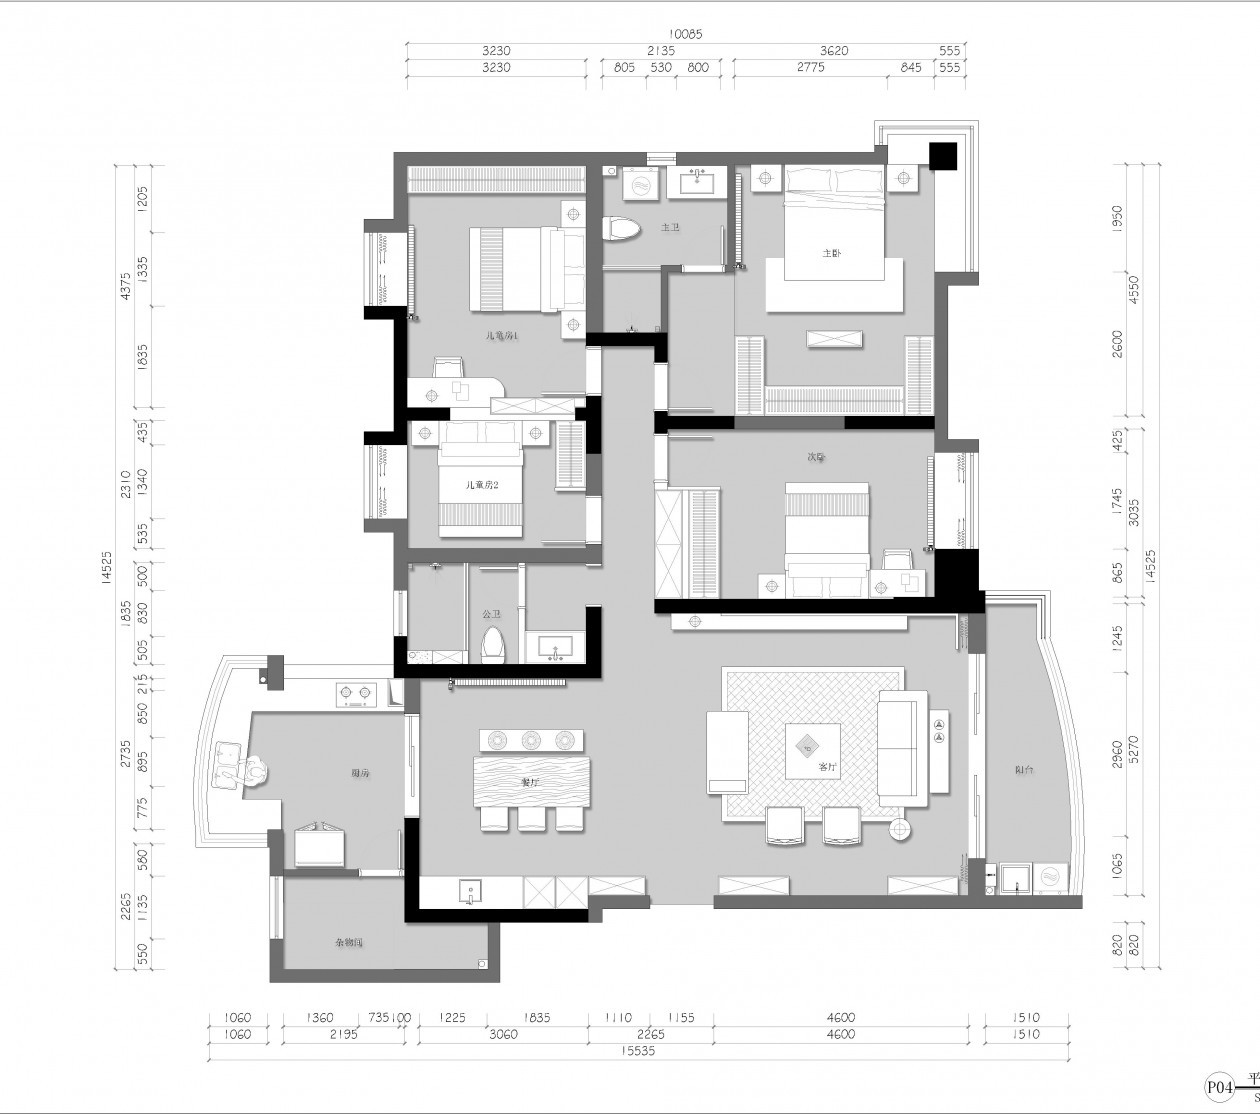 130现代三房装修效果图,复古而不失现代的简约利落装修案例效果图-美广网(图1)